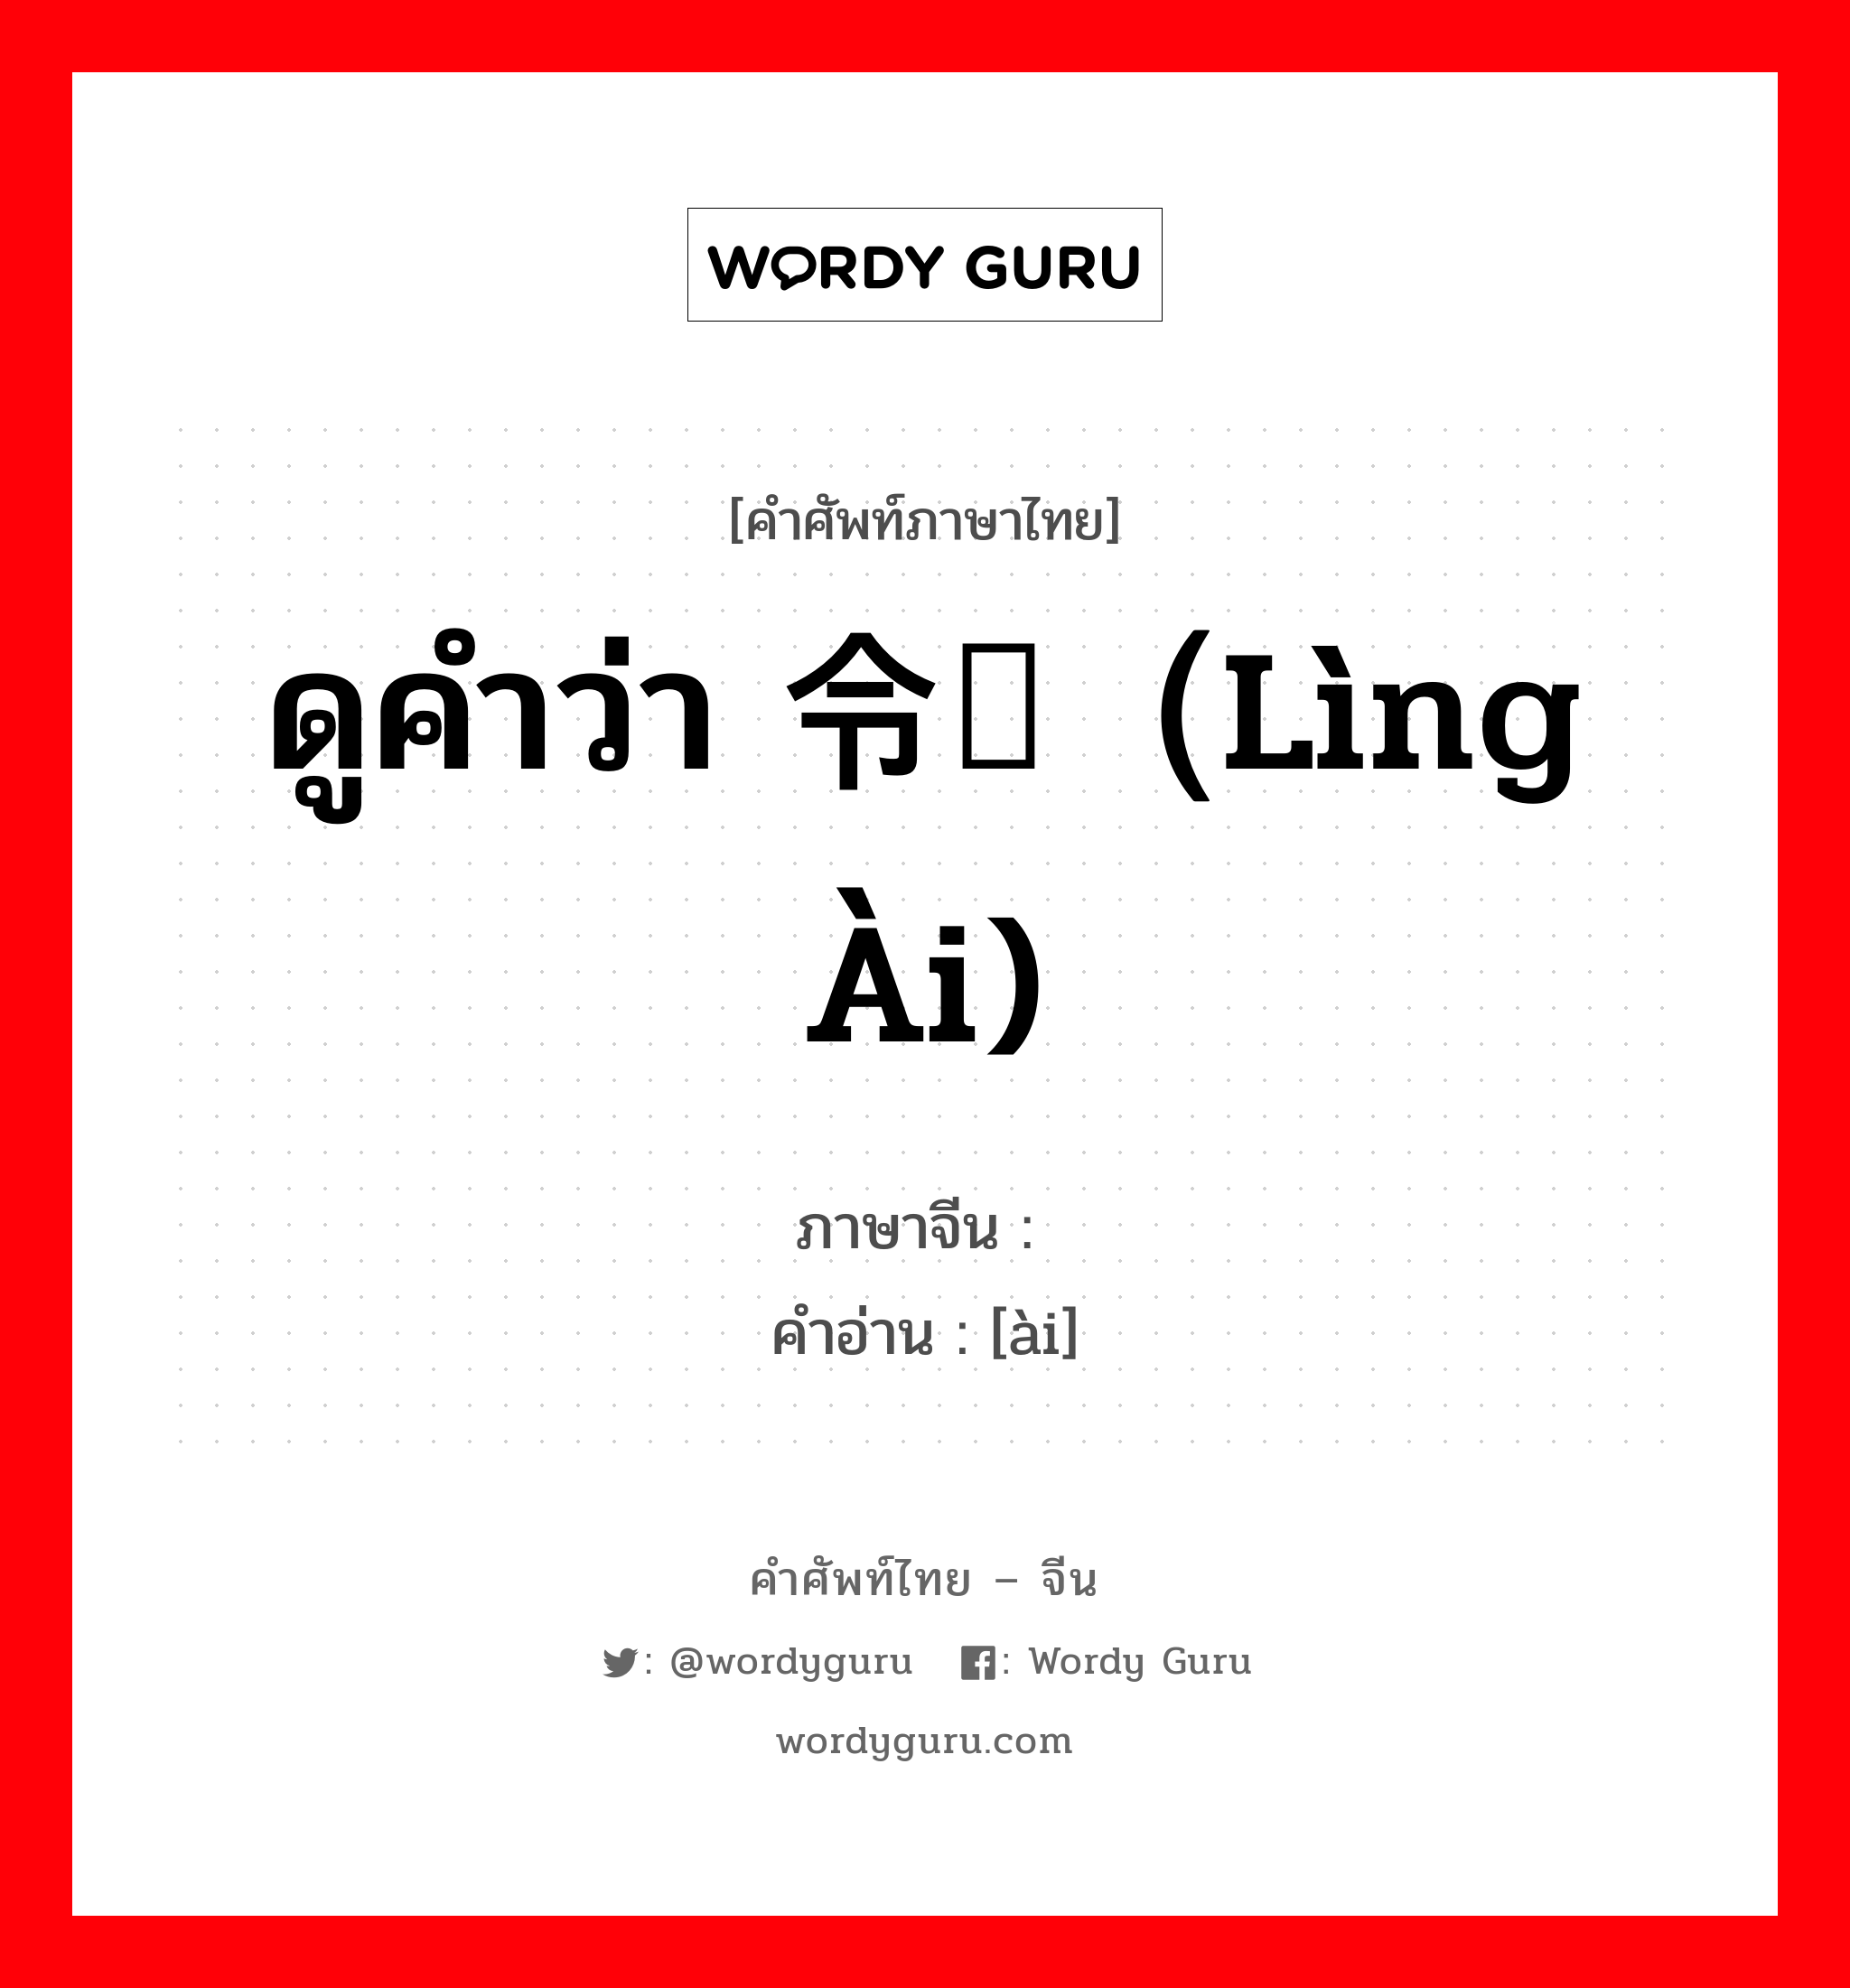 ดูคำว่า 令嫒（lìng ài) ภาษาจีนคืออะไร, คำศัพท์ภาษาไทย - จีน ดูคำว่า 令嫒（lìng ài) ภาษาจีน 嫒 คำอ่าน [ài]